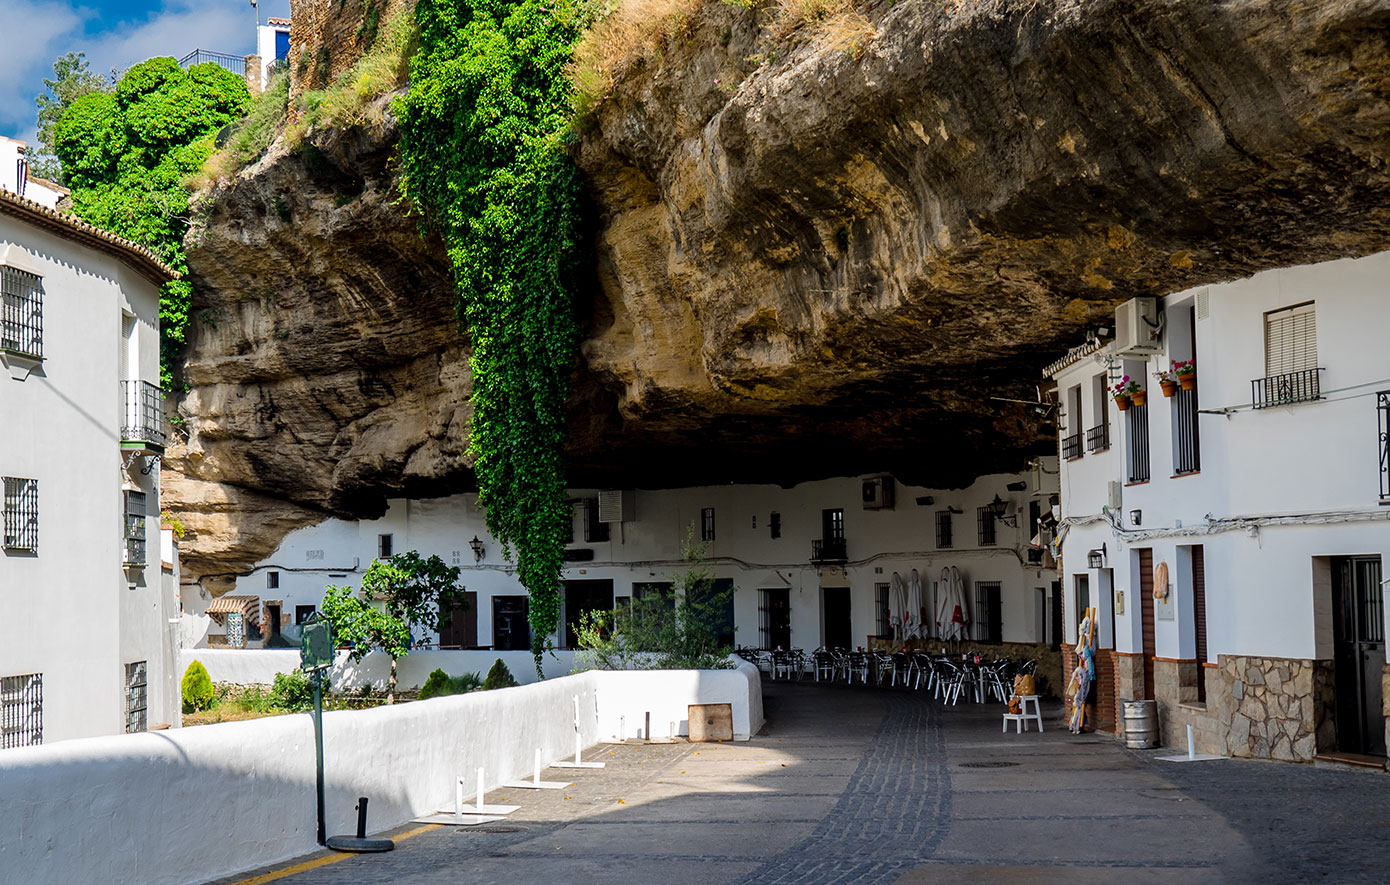 Το πιο παράξενο χωριό του κόσμου είναι χτισμένο μέσα σε βράχους